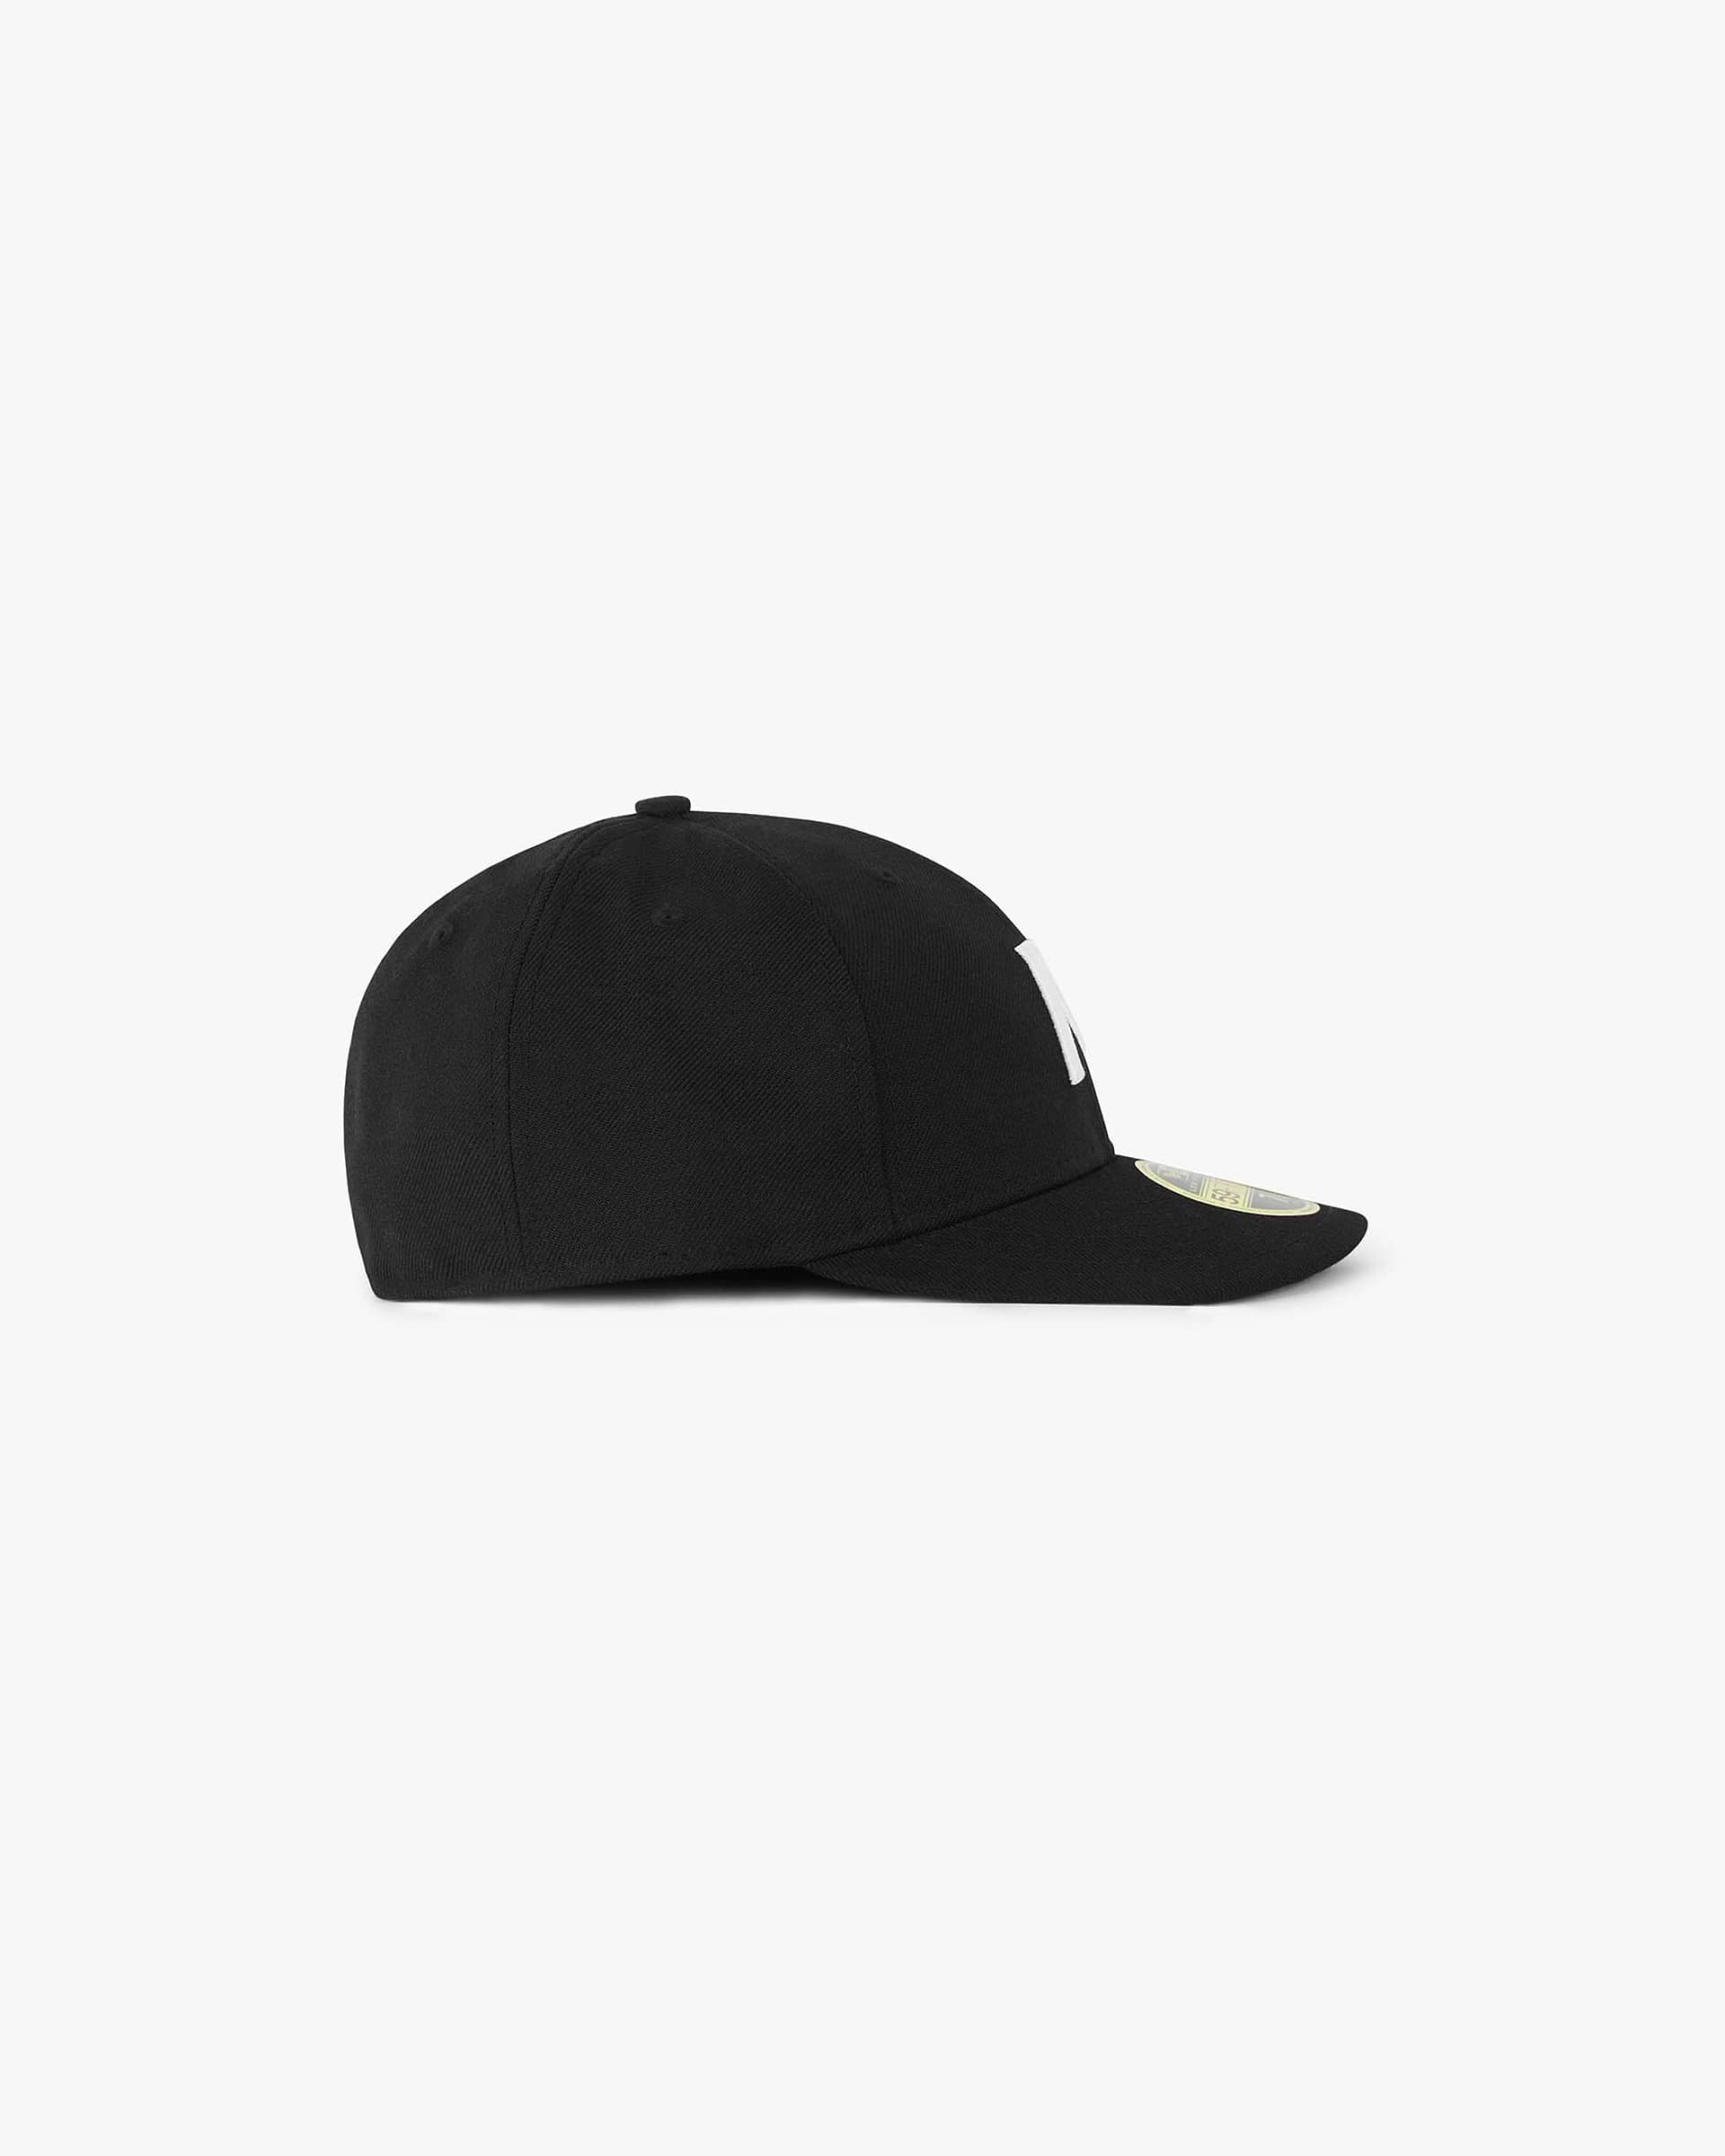 Initial New Era 59Fifty Cap | Black Accessories FW22 | Represent Clo